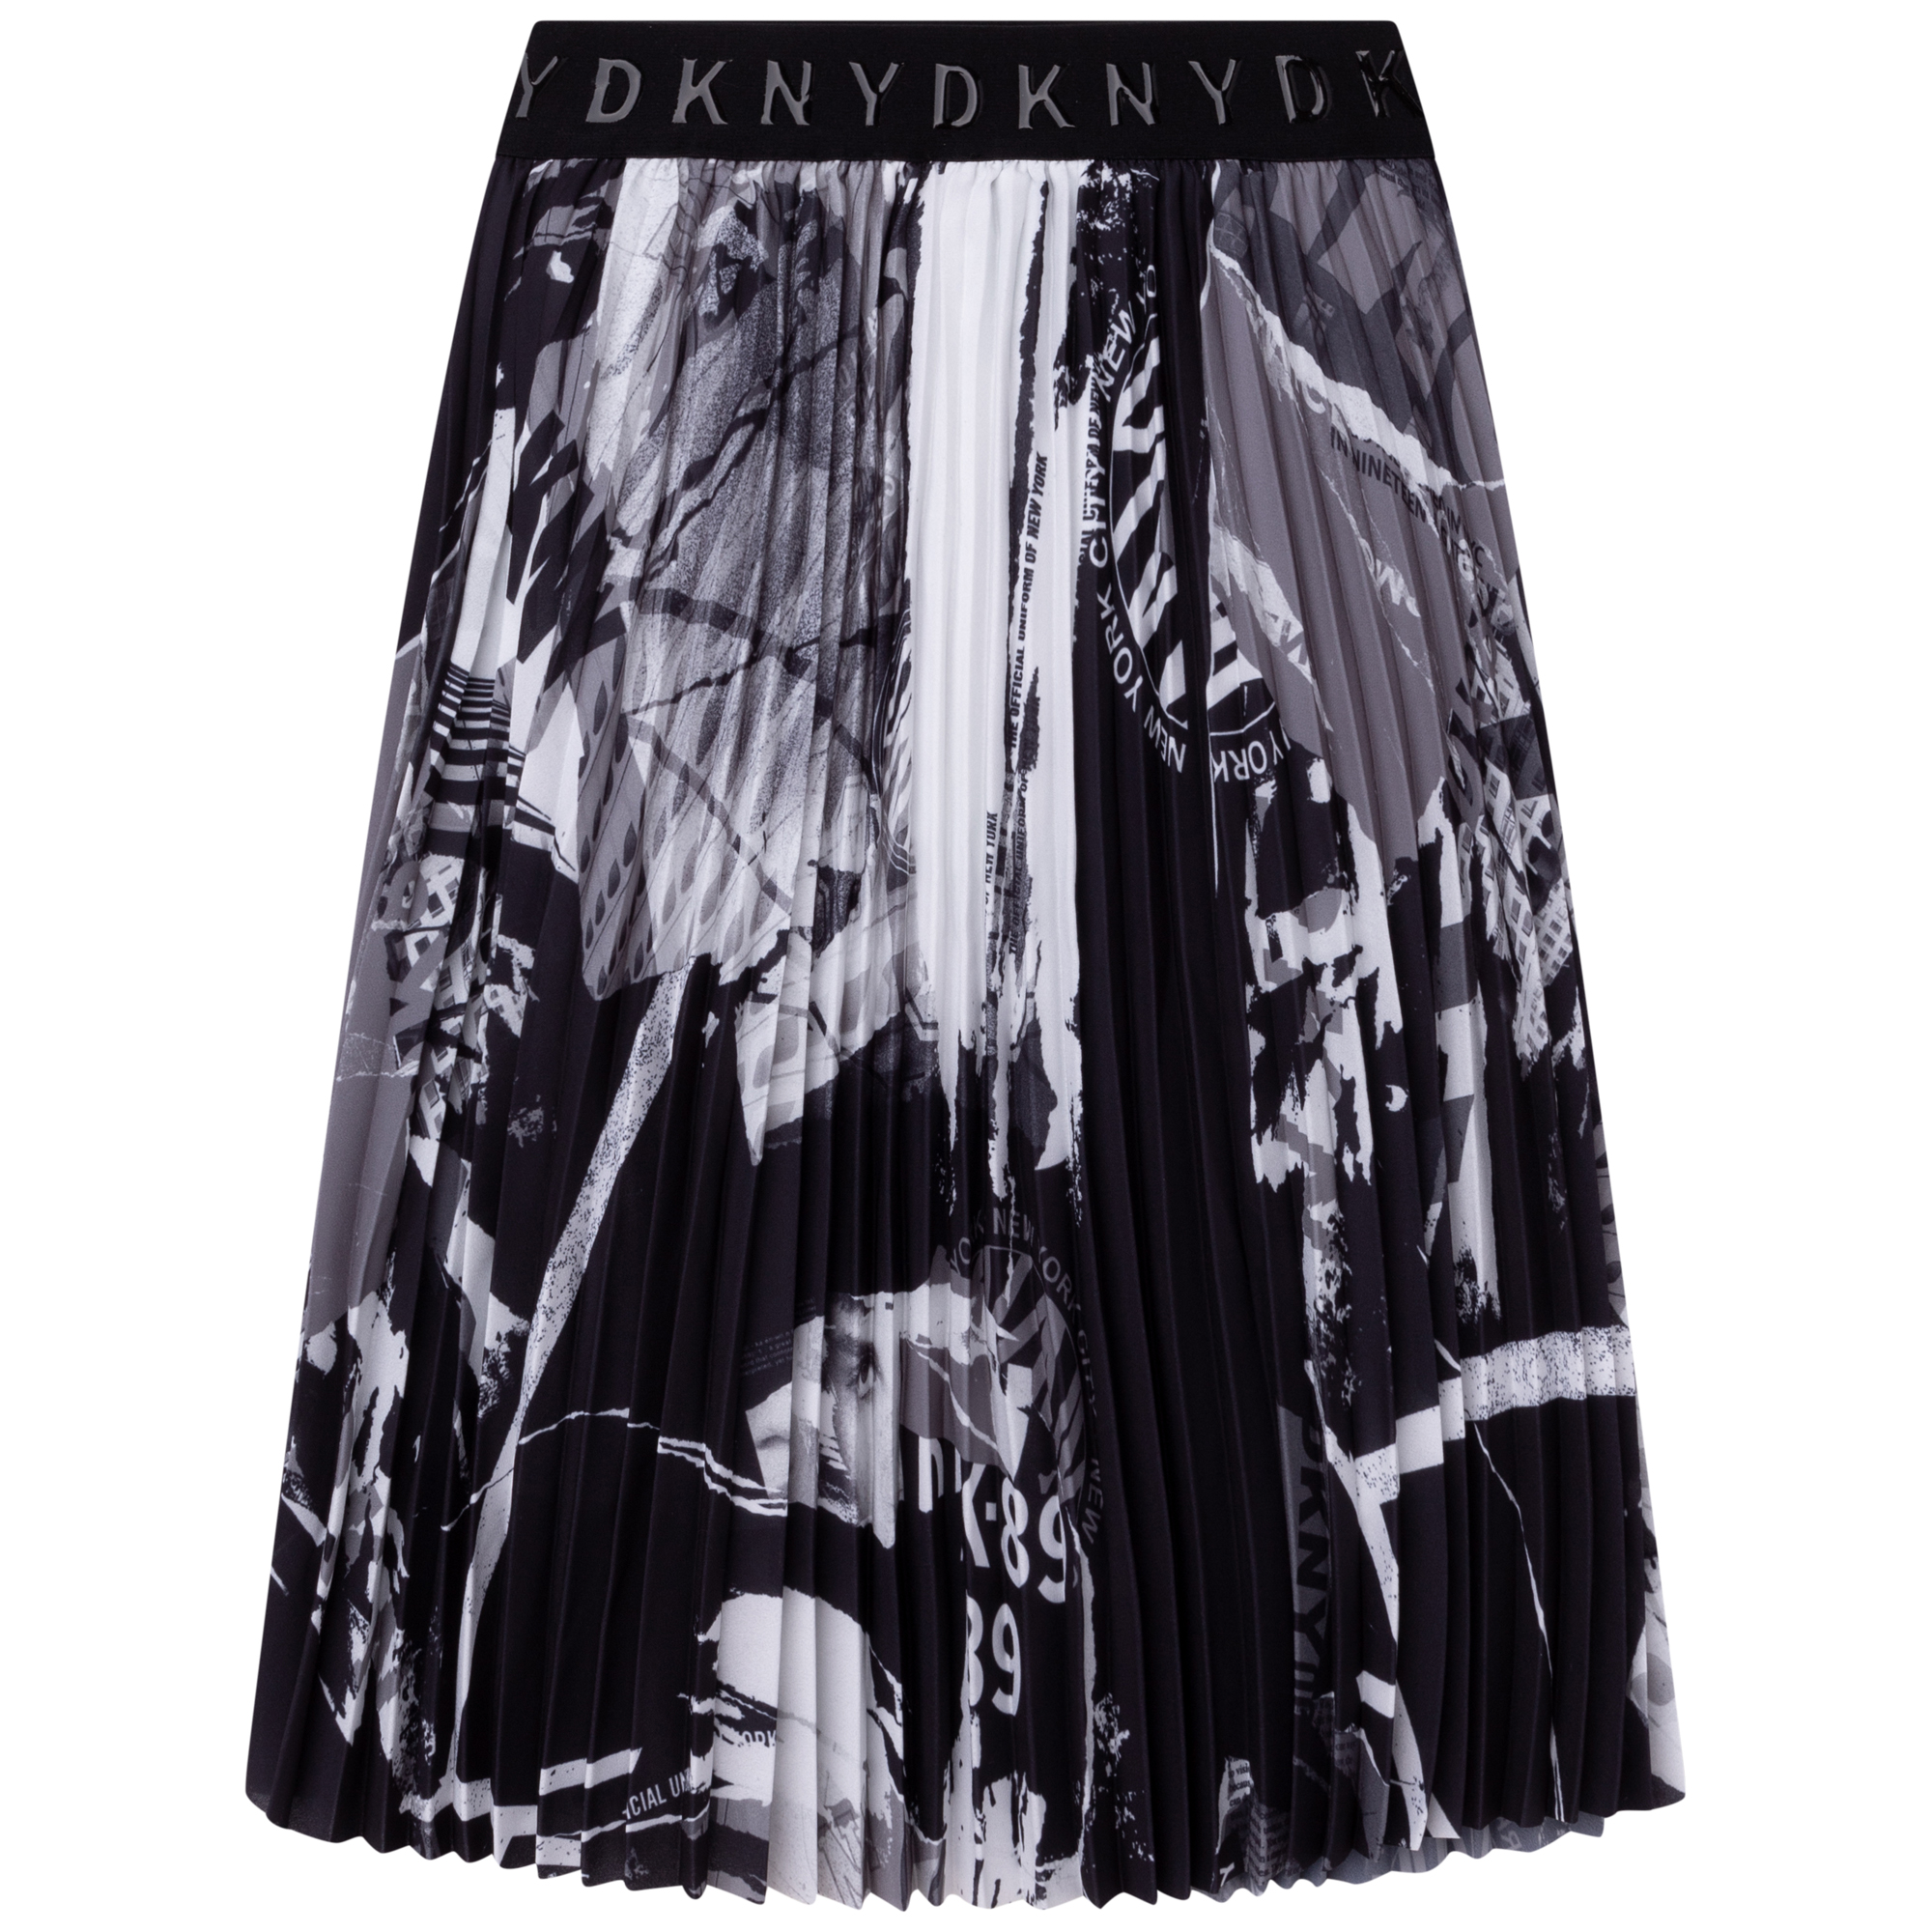 Geplooide rok met opdruk DKNY Voor